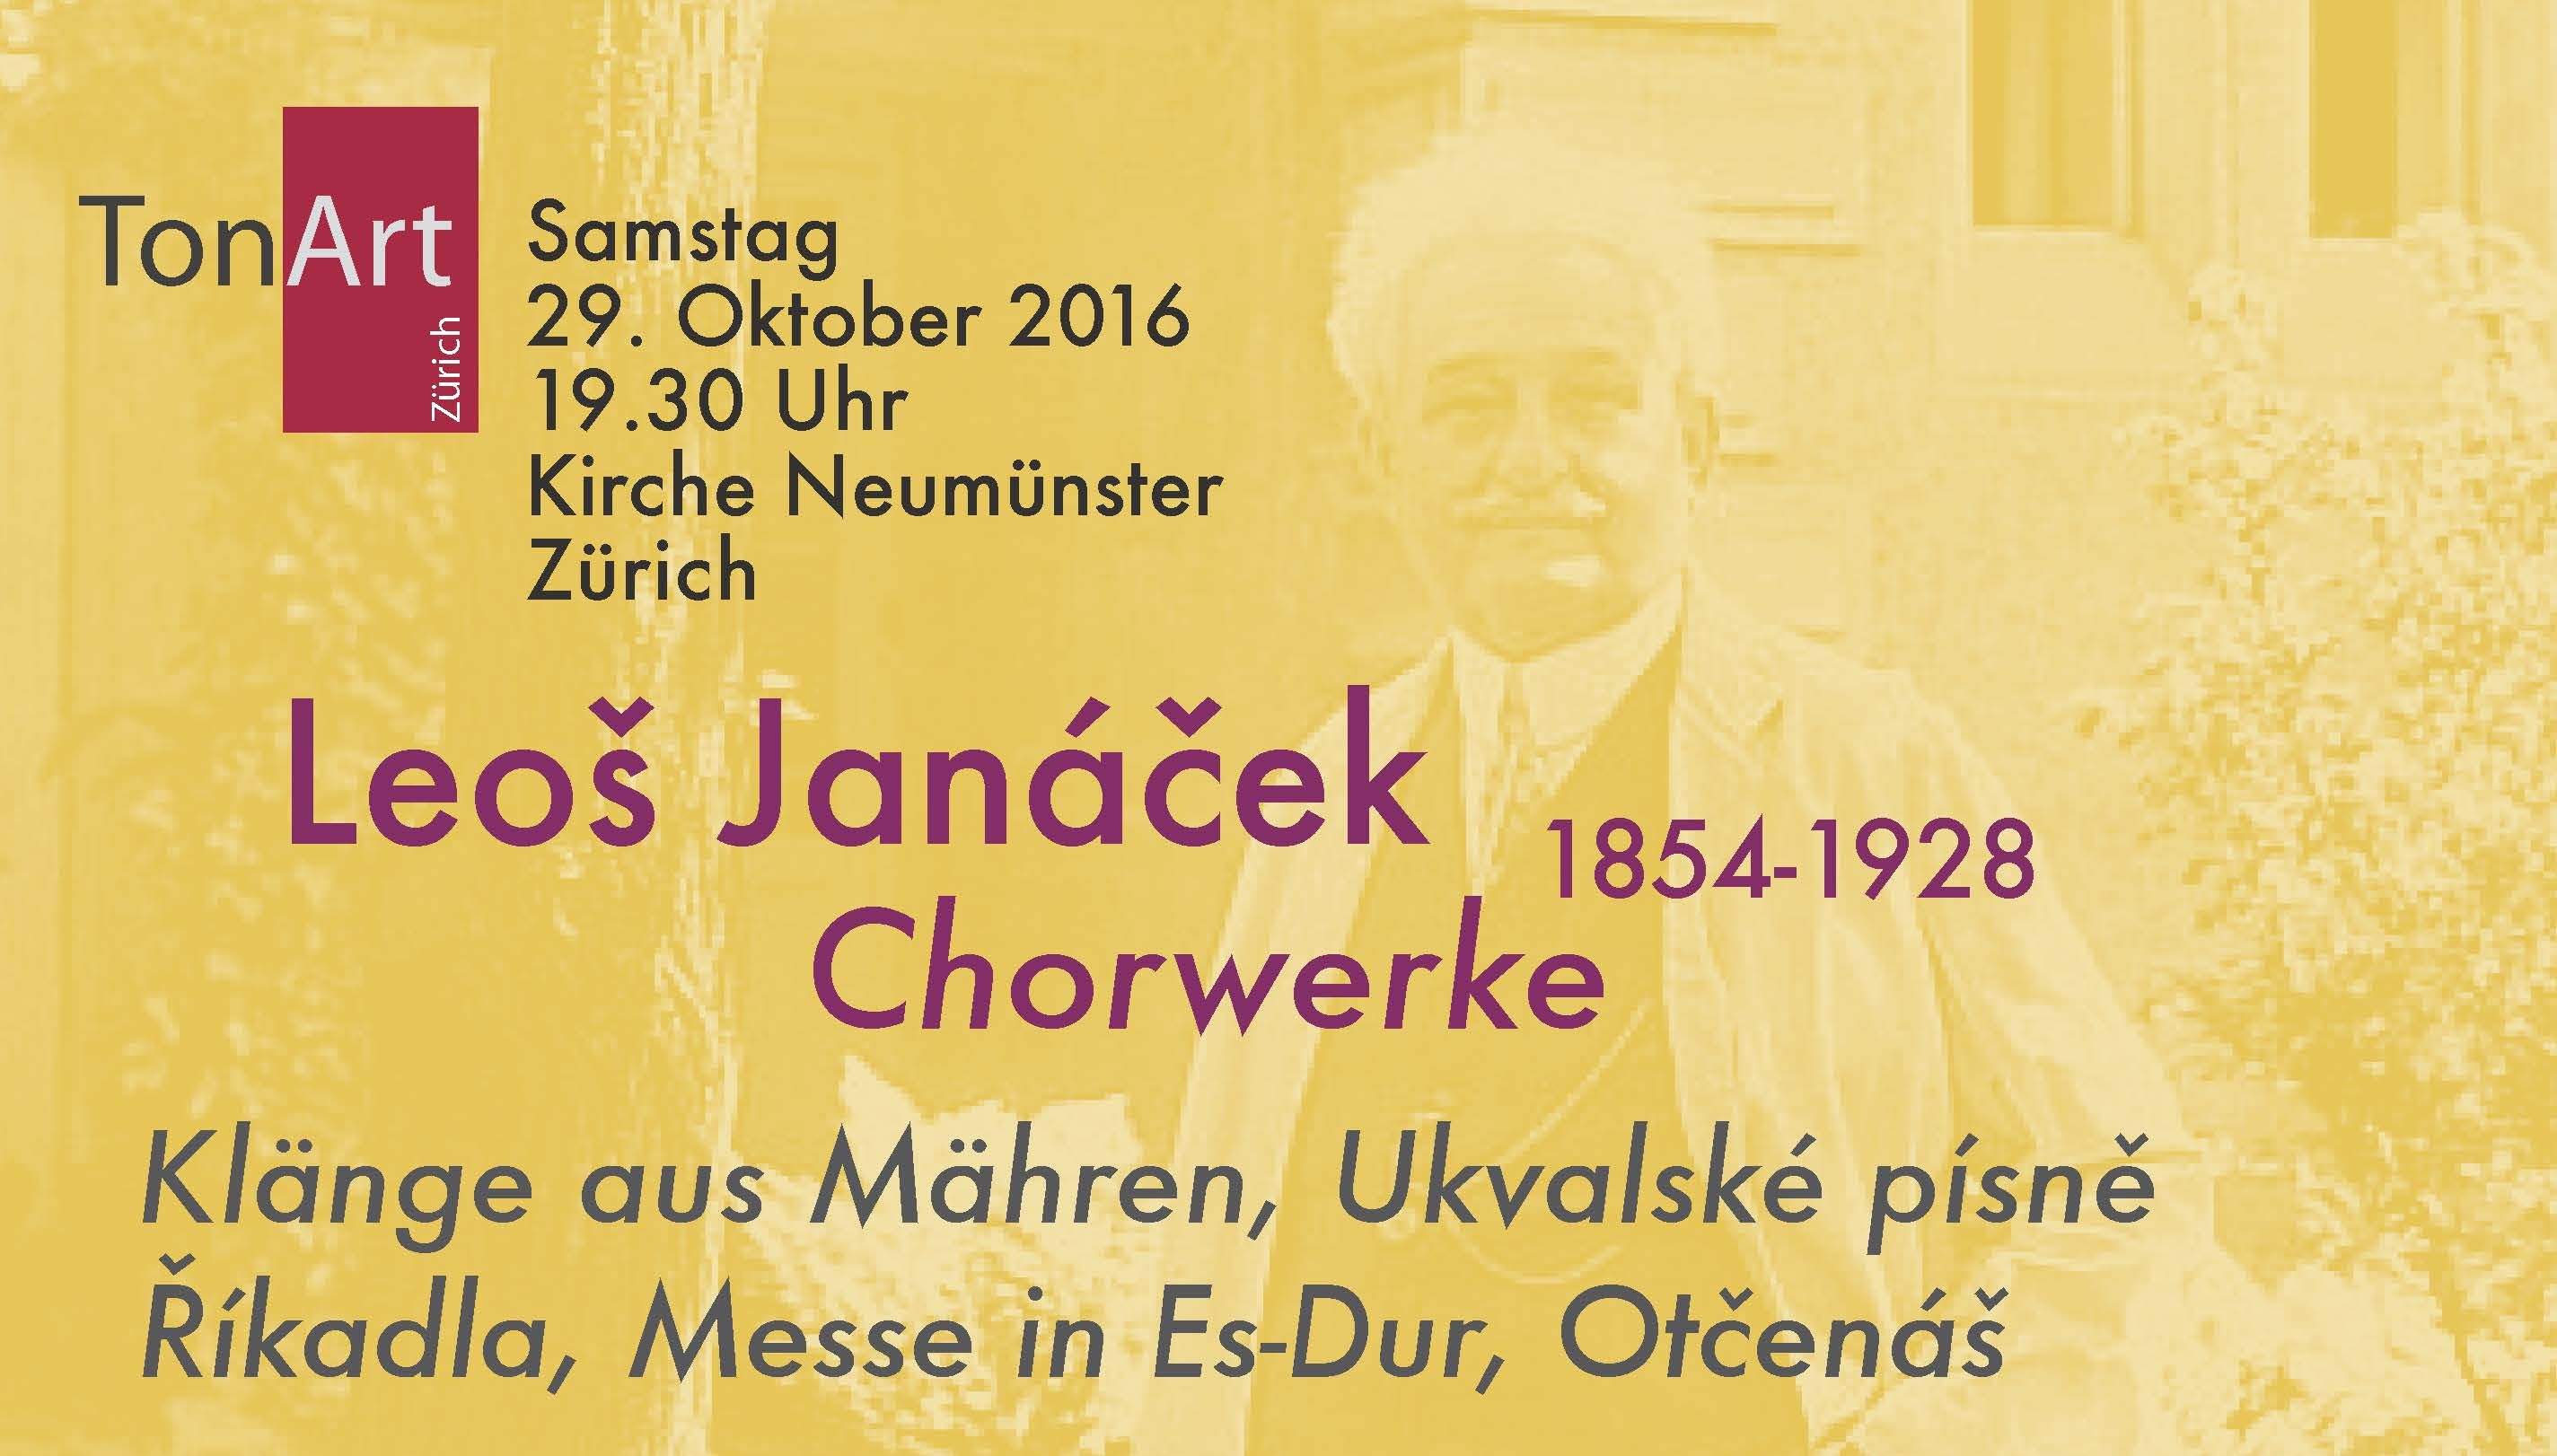 29.10.16, 19.30 Uhr. Werke von Leoš Janacek in der Kirche Neumünster, Zürich